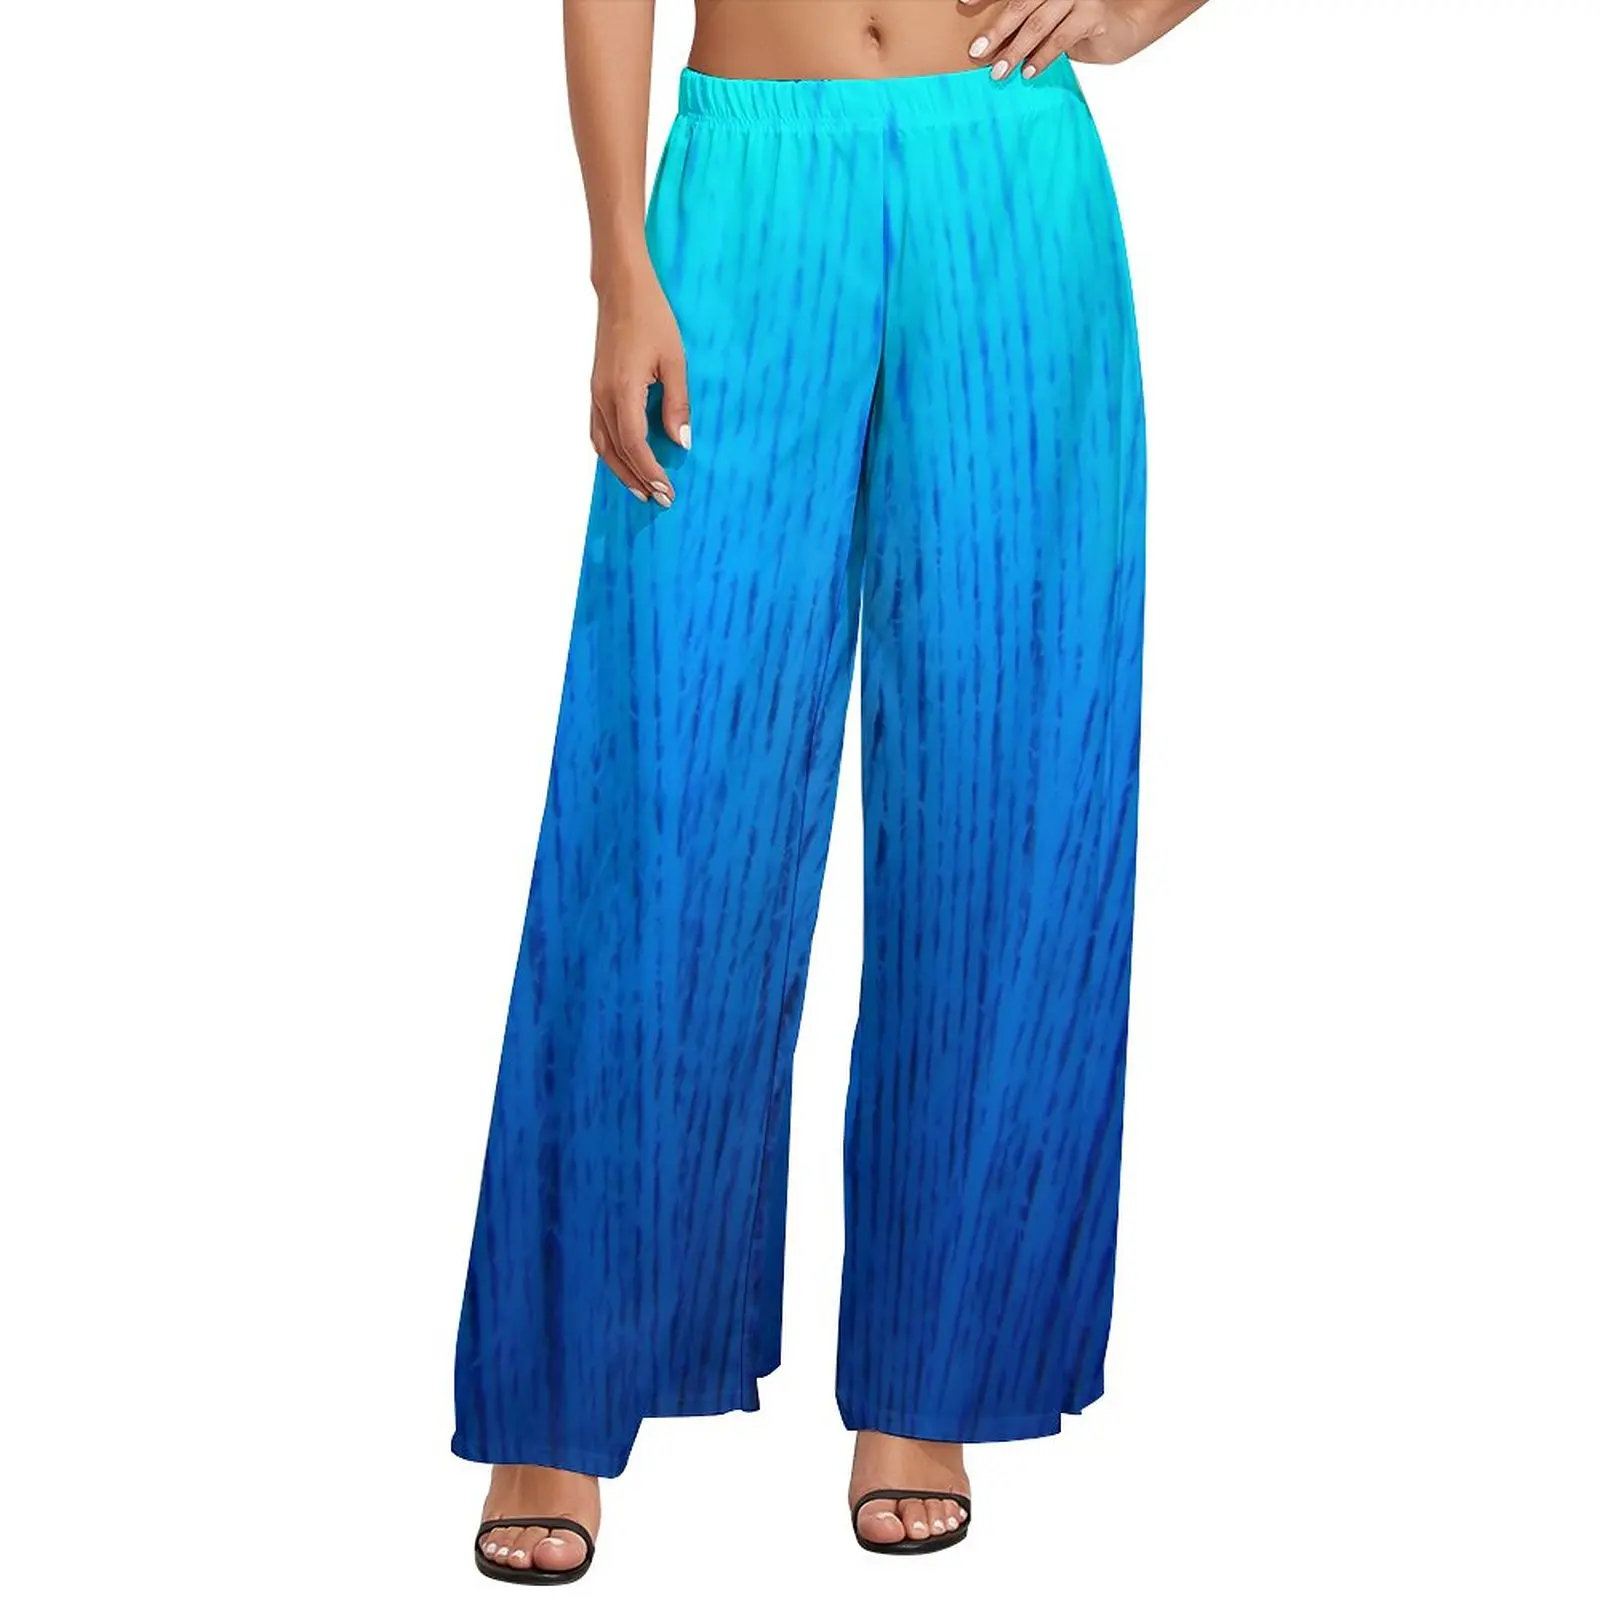 

Синие прямые брюки с эффектом омбре, домашние широкие брюки с градиентным принтом, женские уличные брюки большого размера на заказ